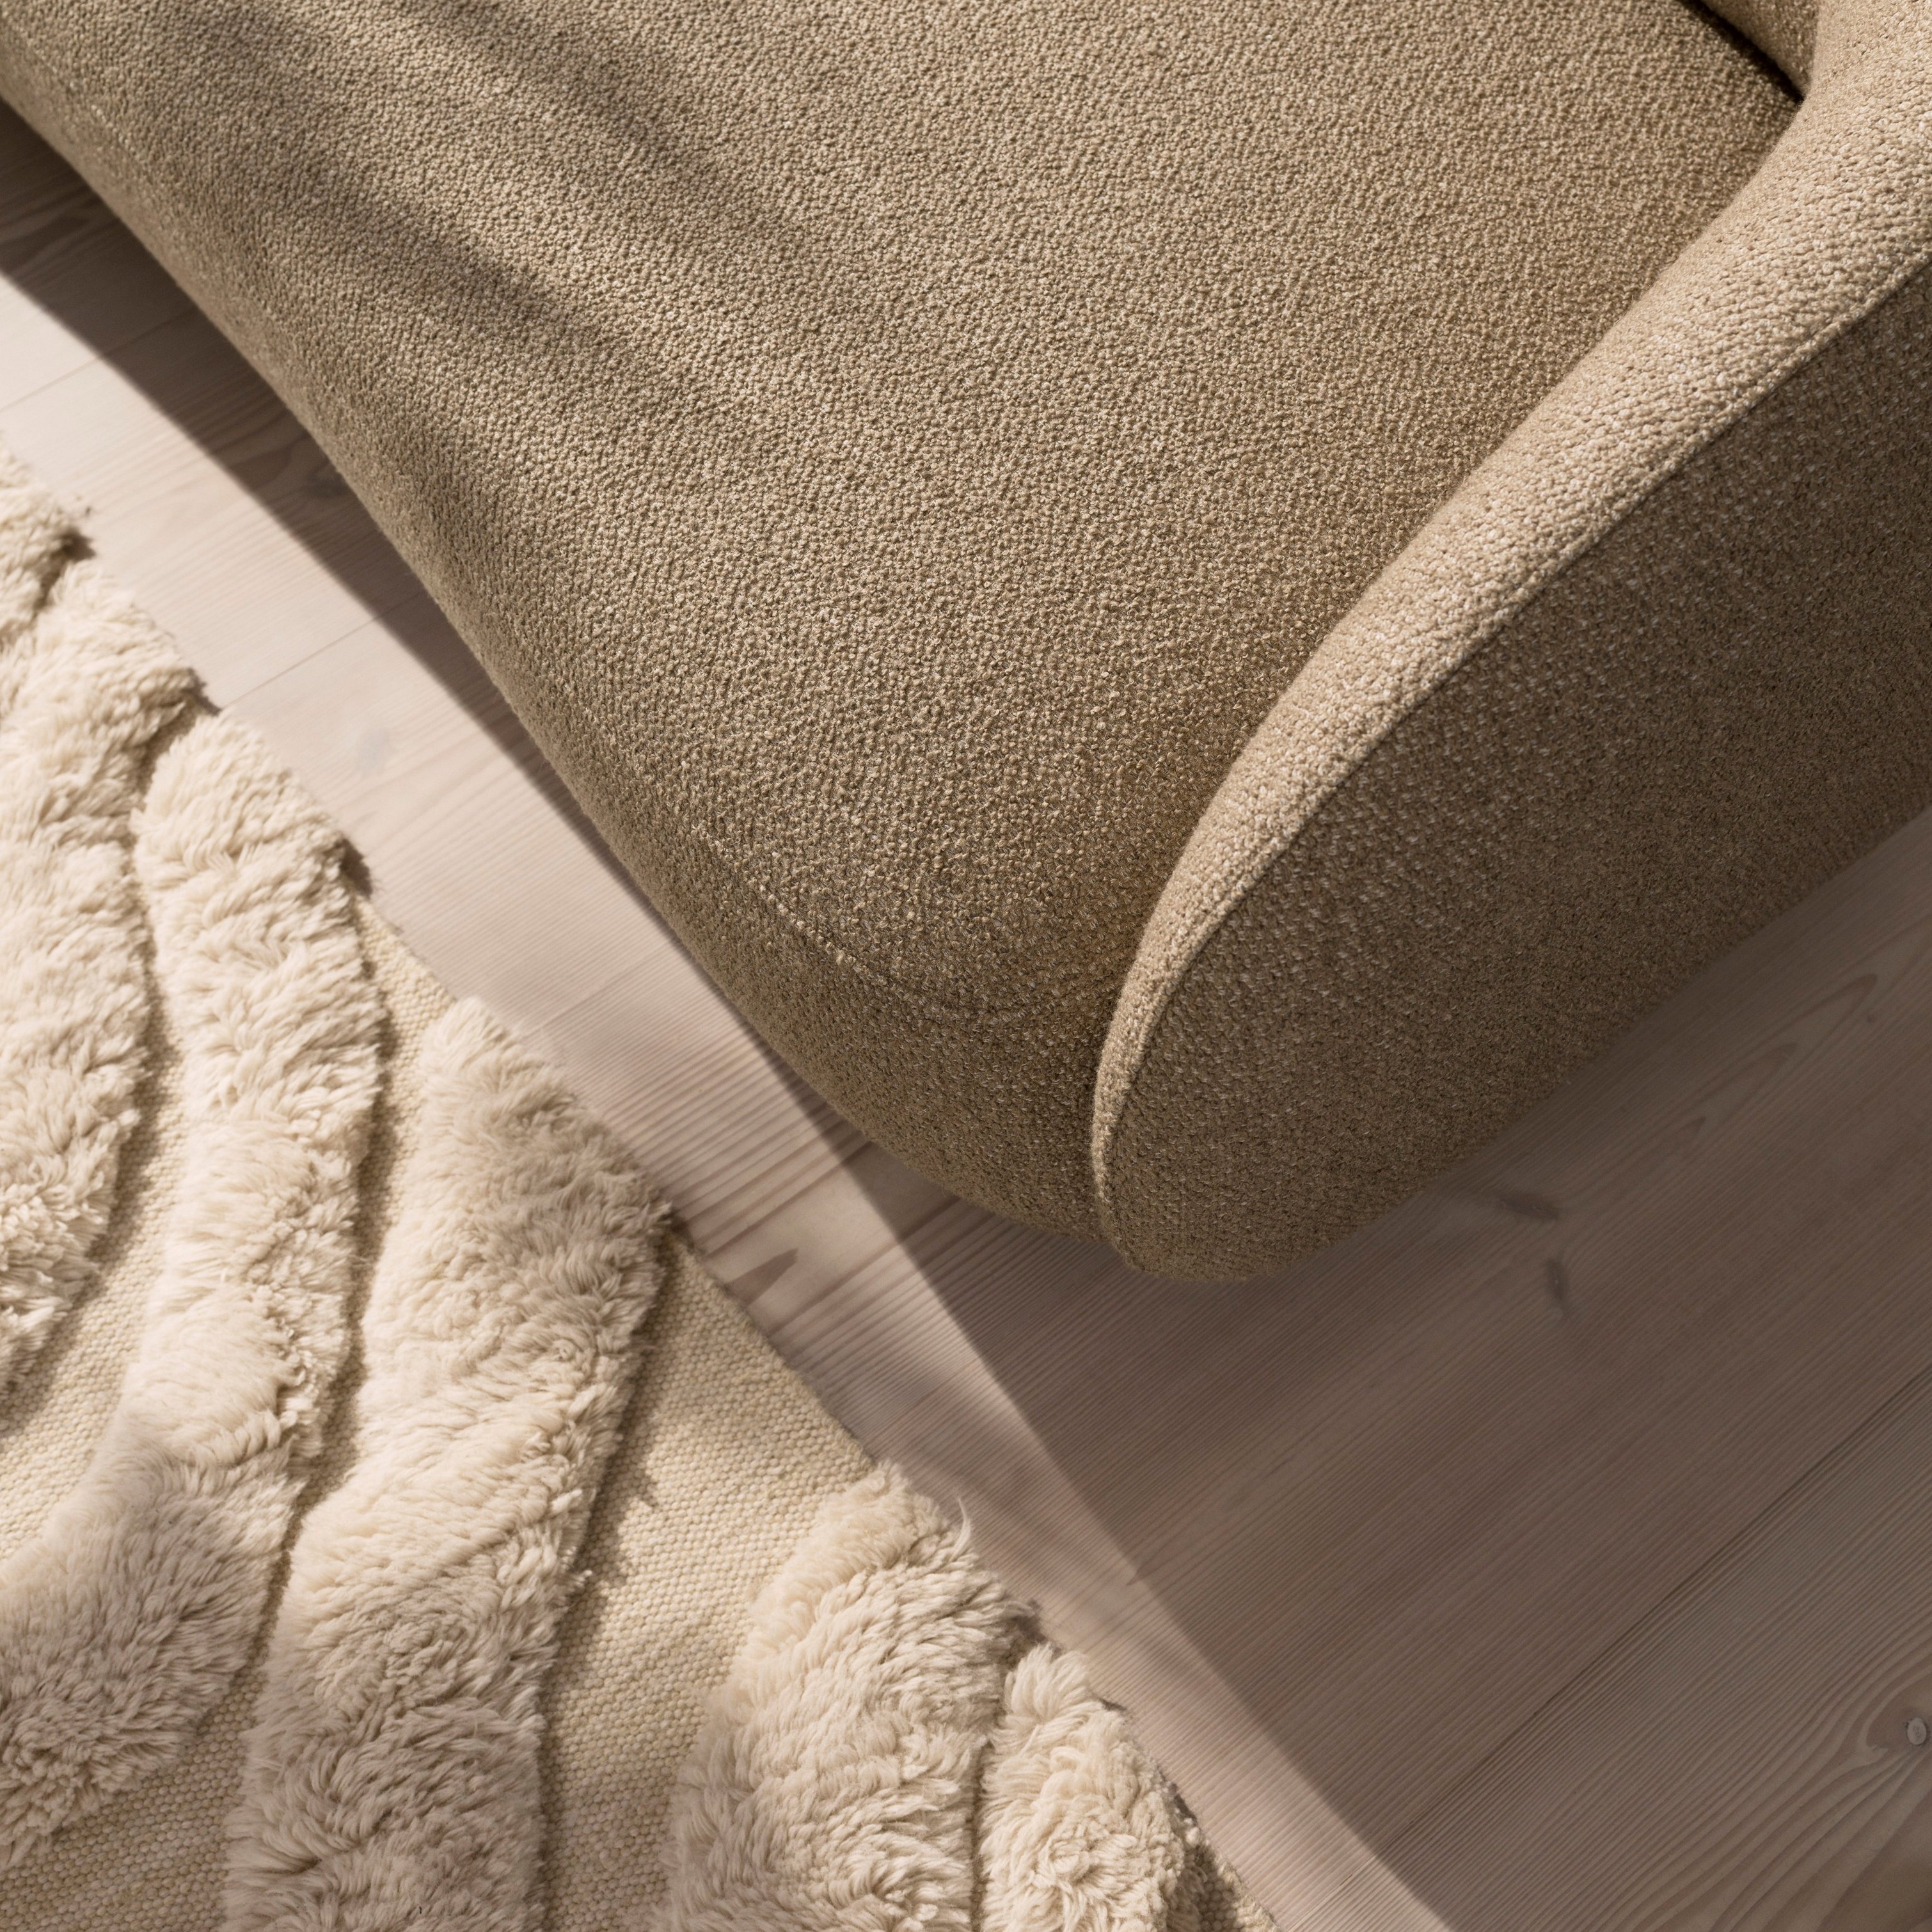 Nærbillede af Bolzano sofa i brunt Lazio stof og Form tæppe i beige.